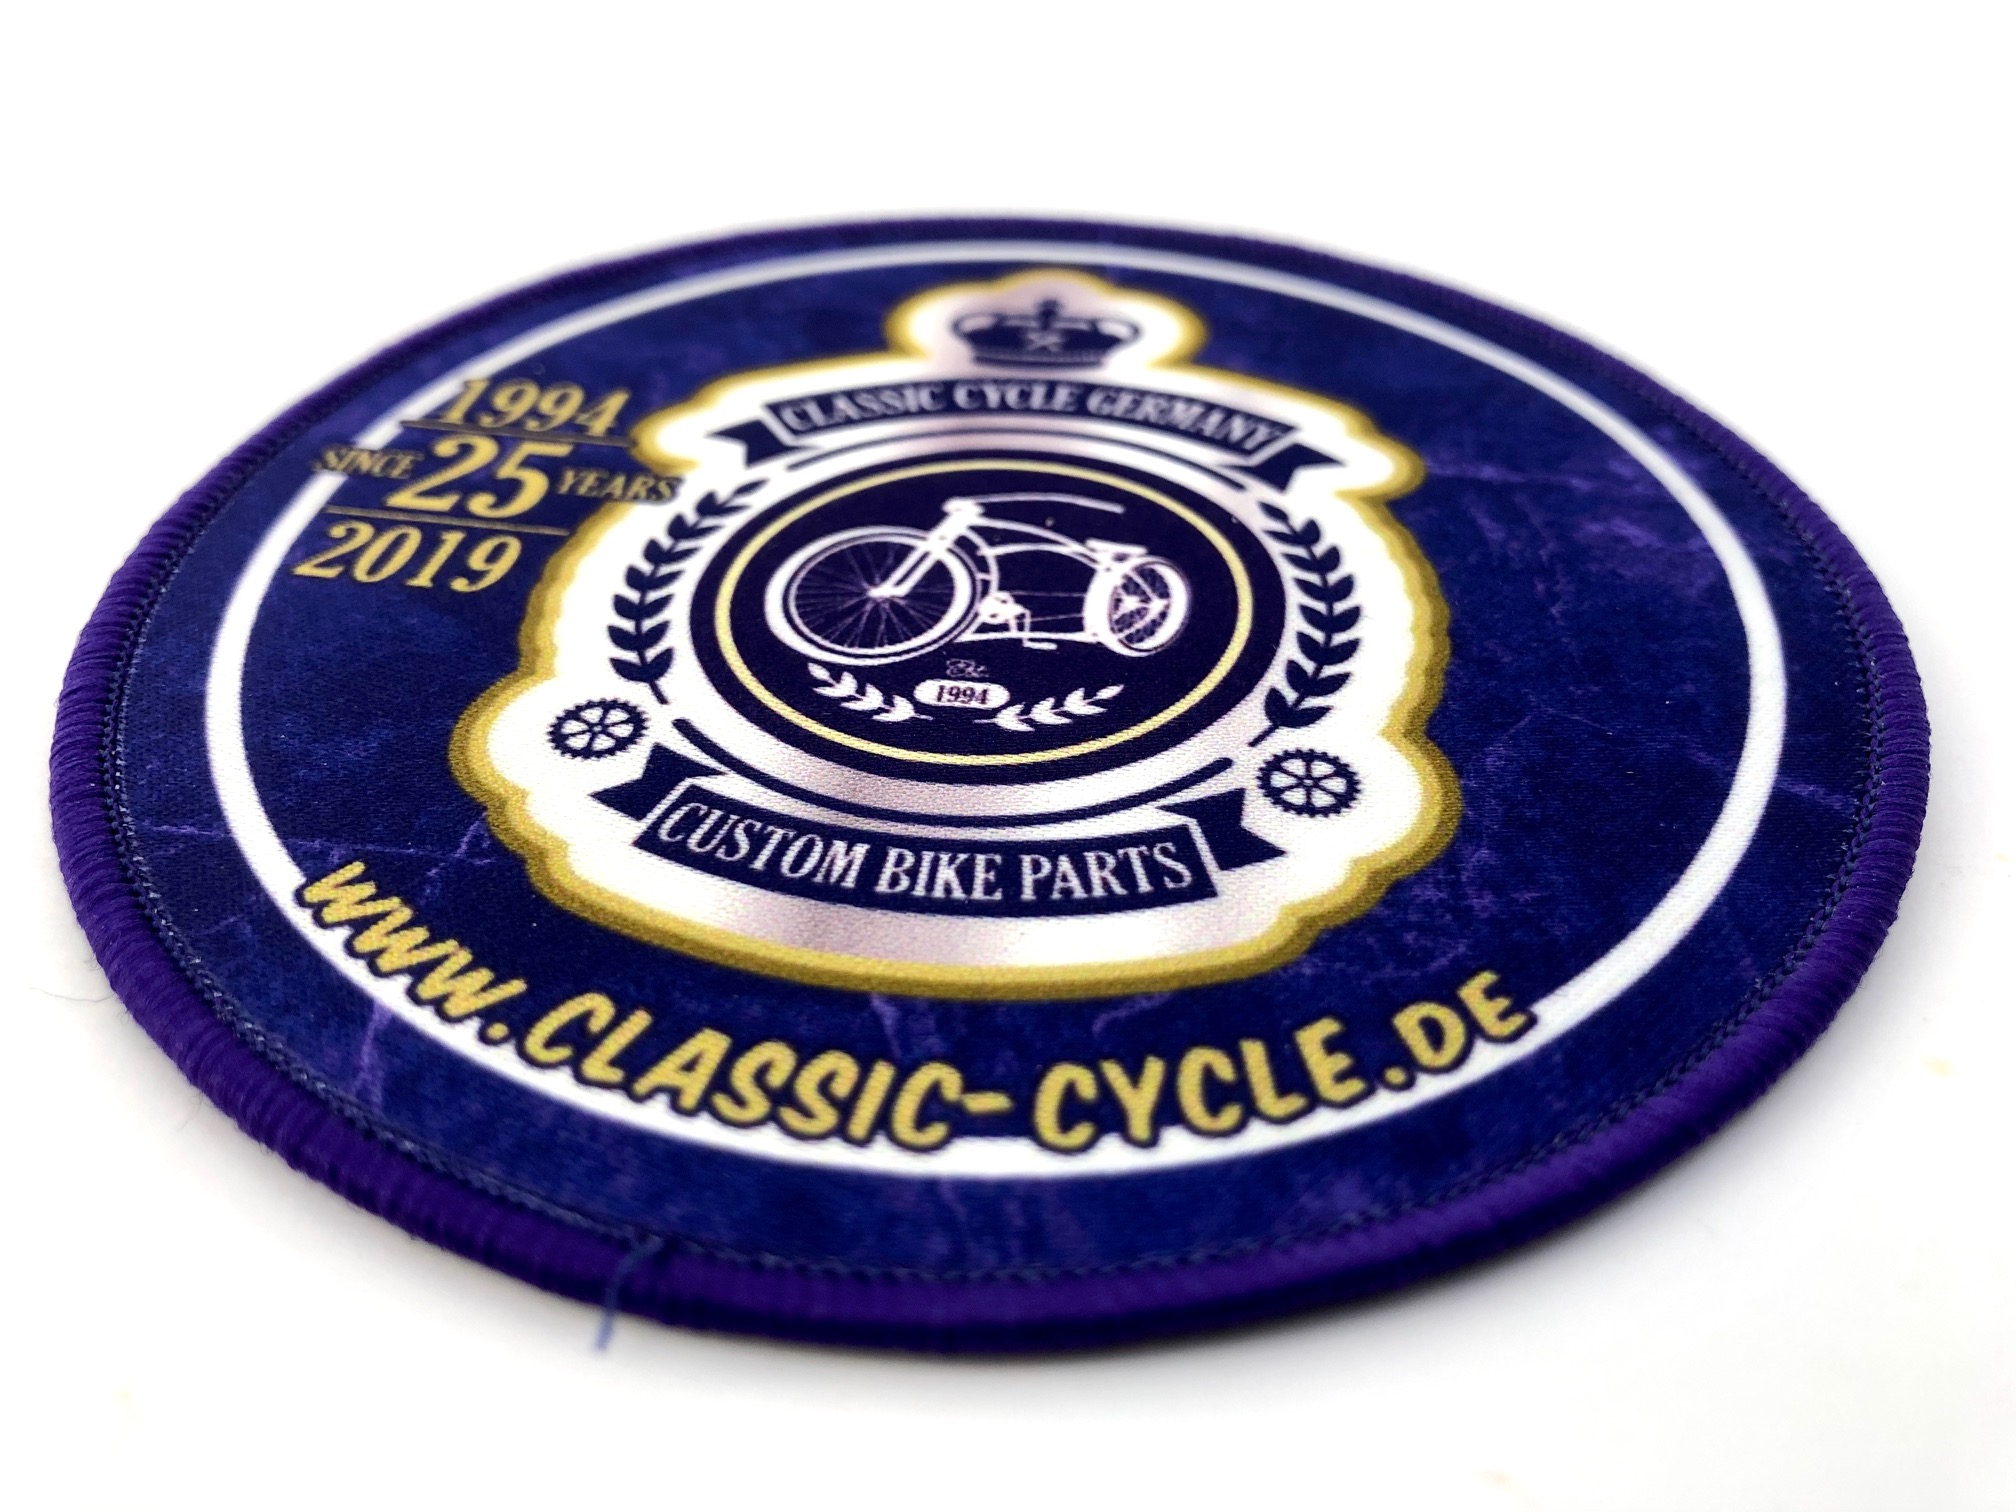 Parche original Classic Cycle por 25 años